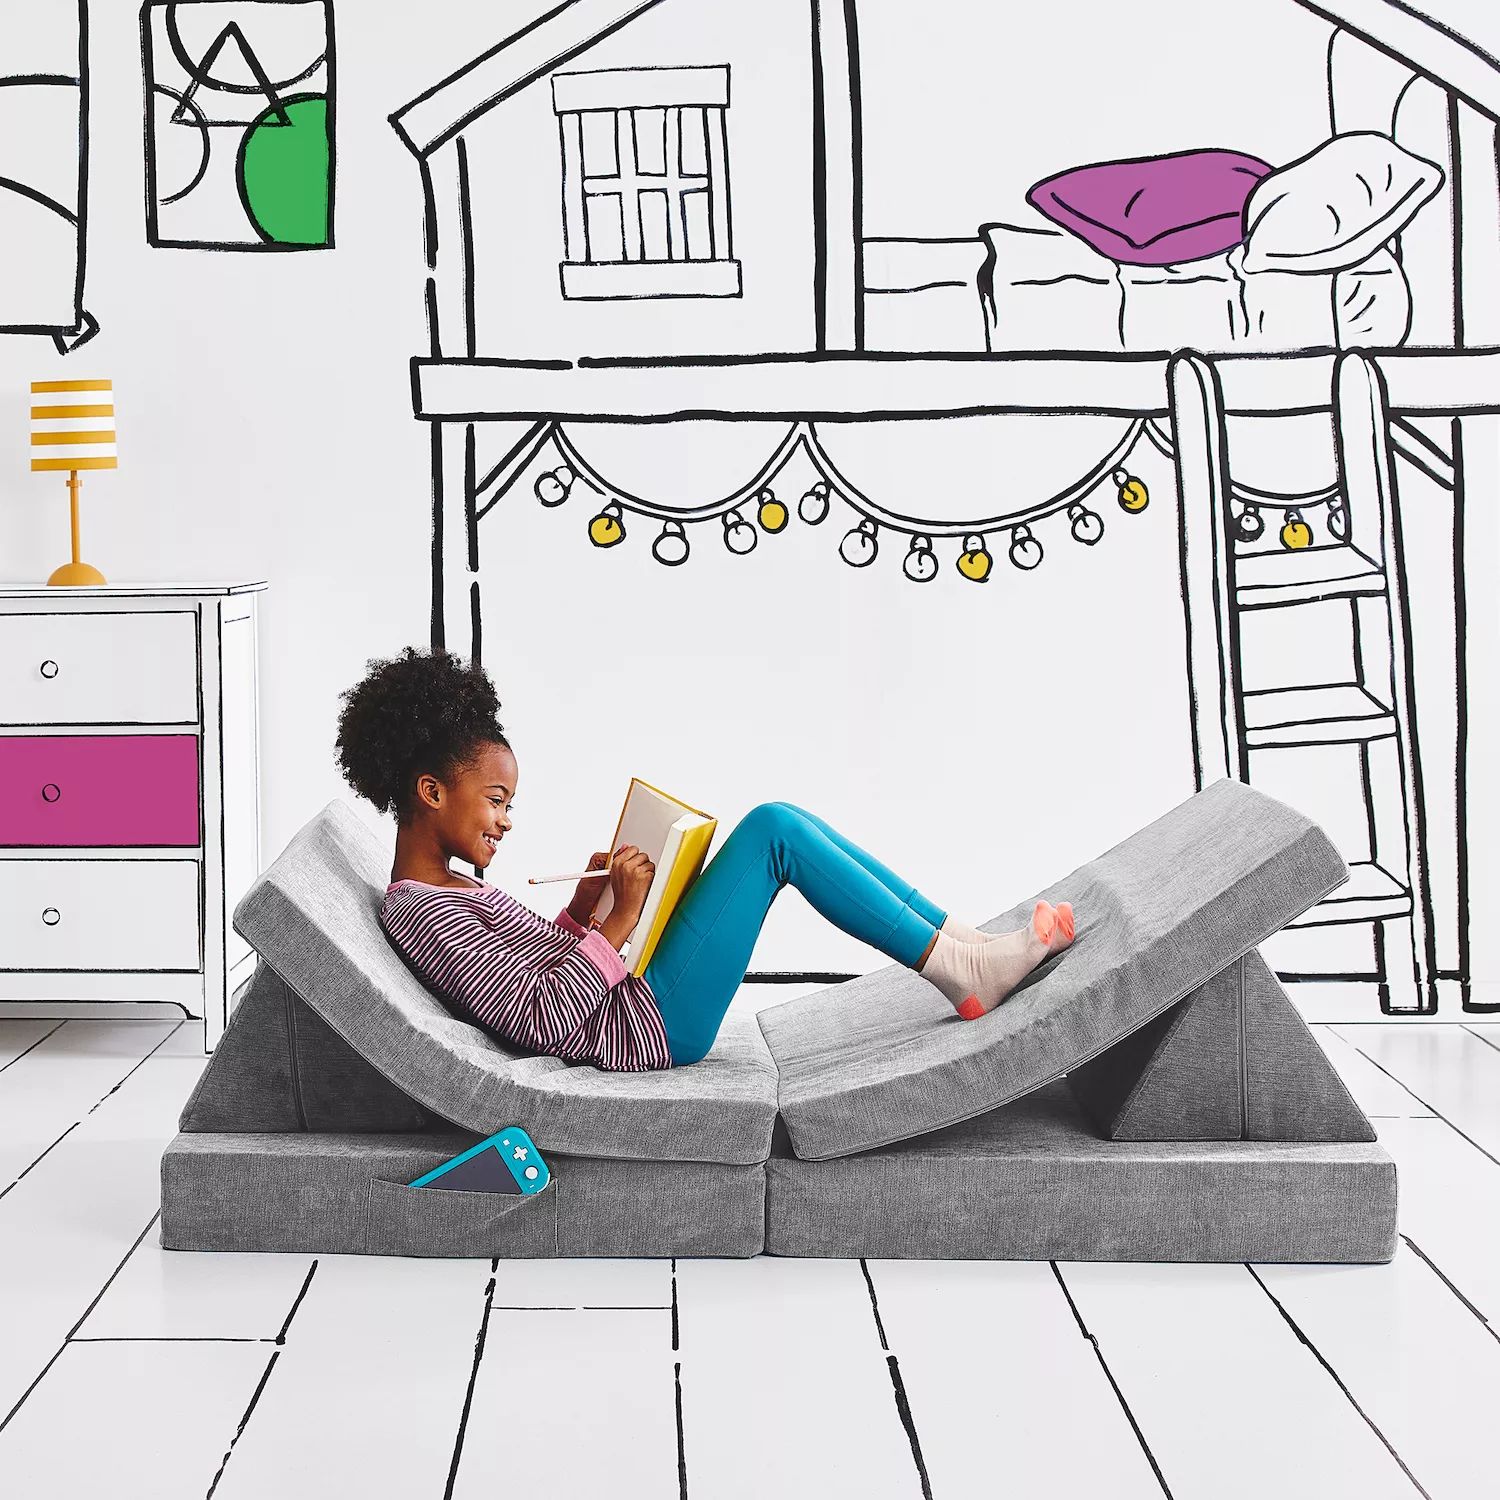 Складной трансформируемый игровой диван для детей и малышей Yourigami YOURIGAMI PLAY SOFA, серый складной трансформируемый игровой диван для детей и малышей yourigami yourigami play sofa синий